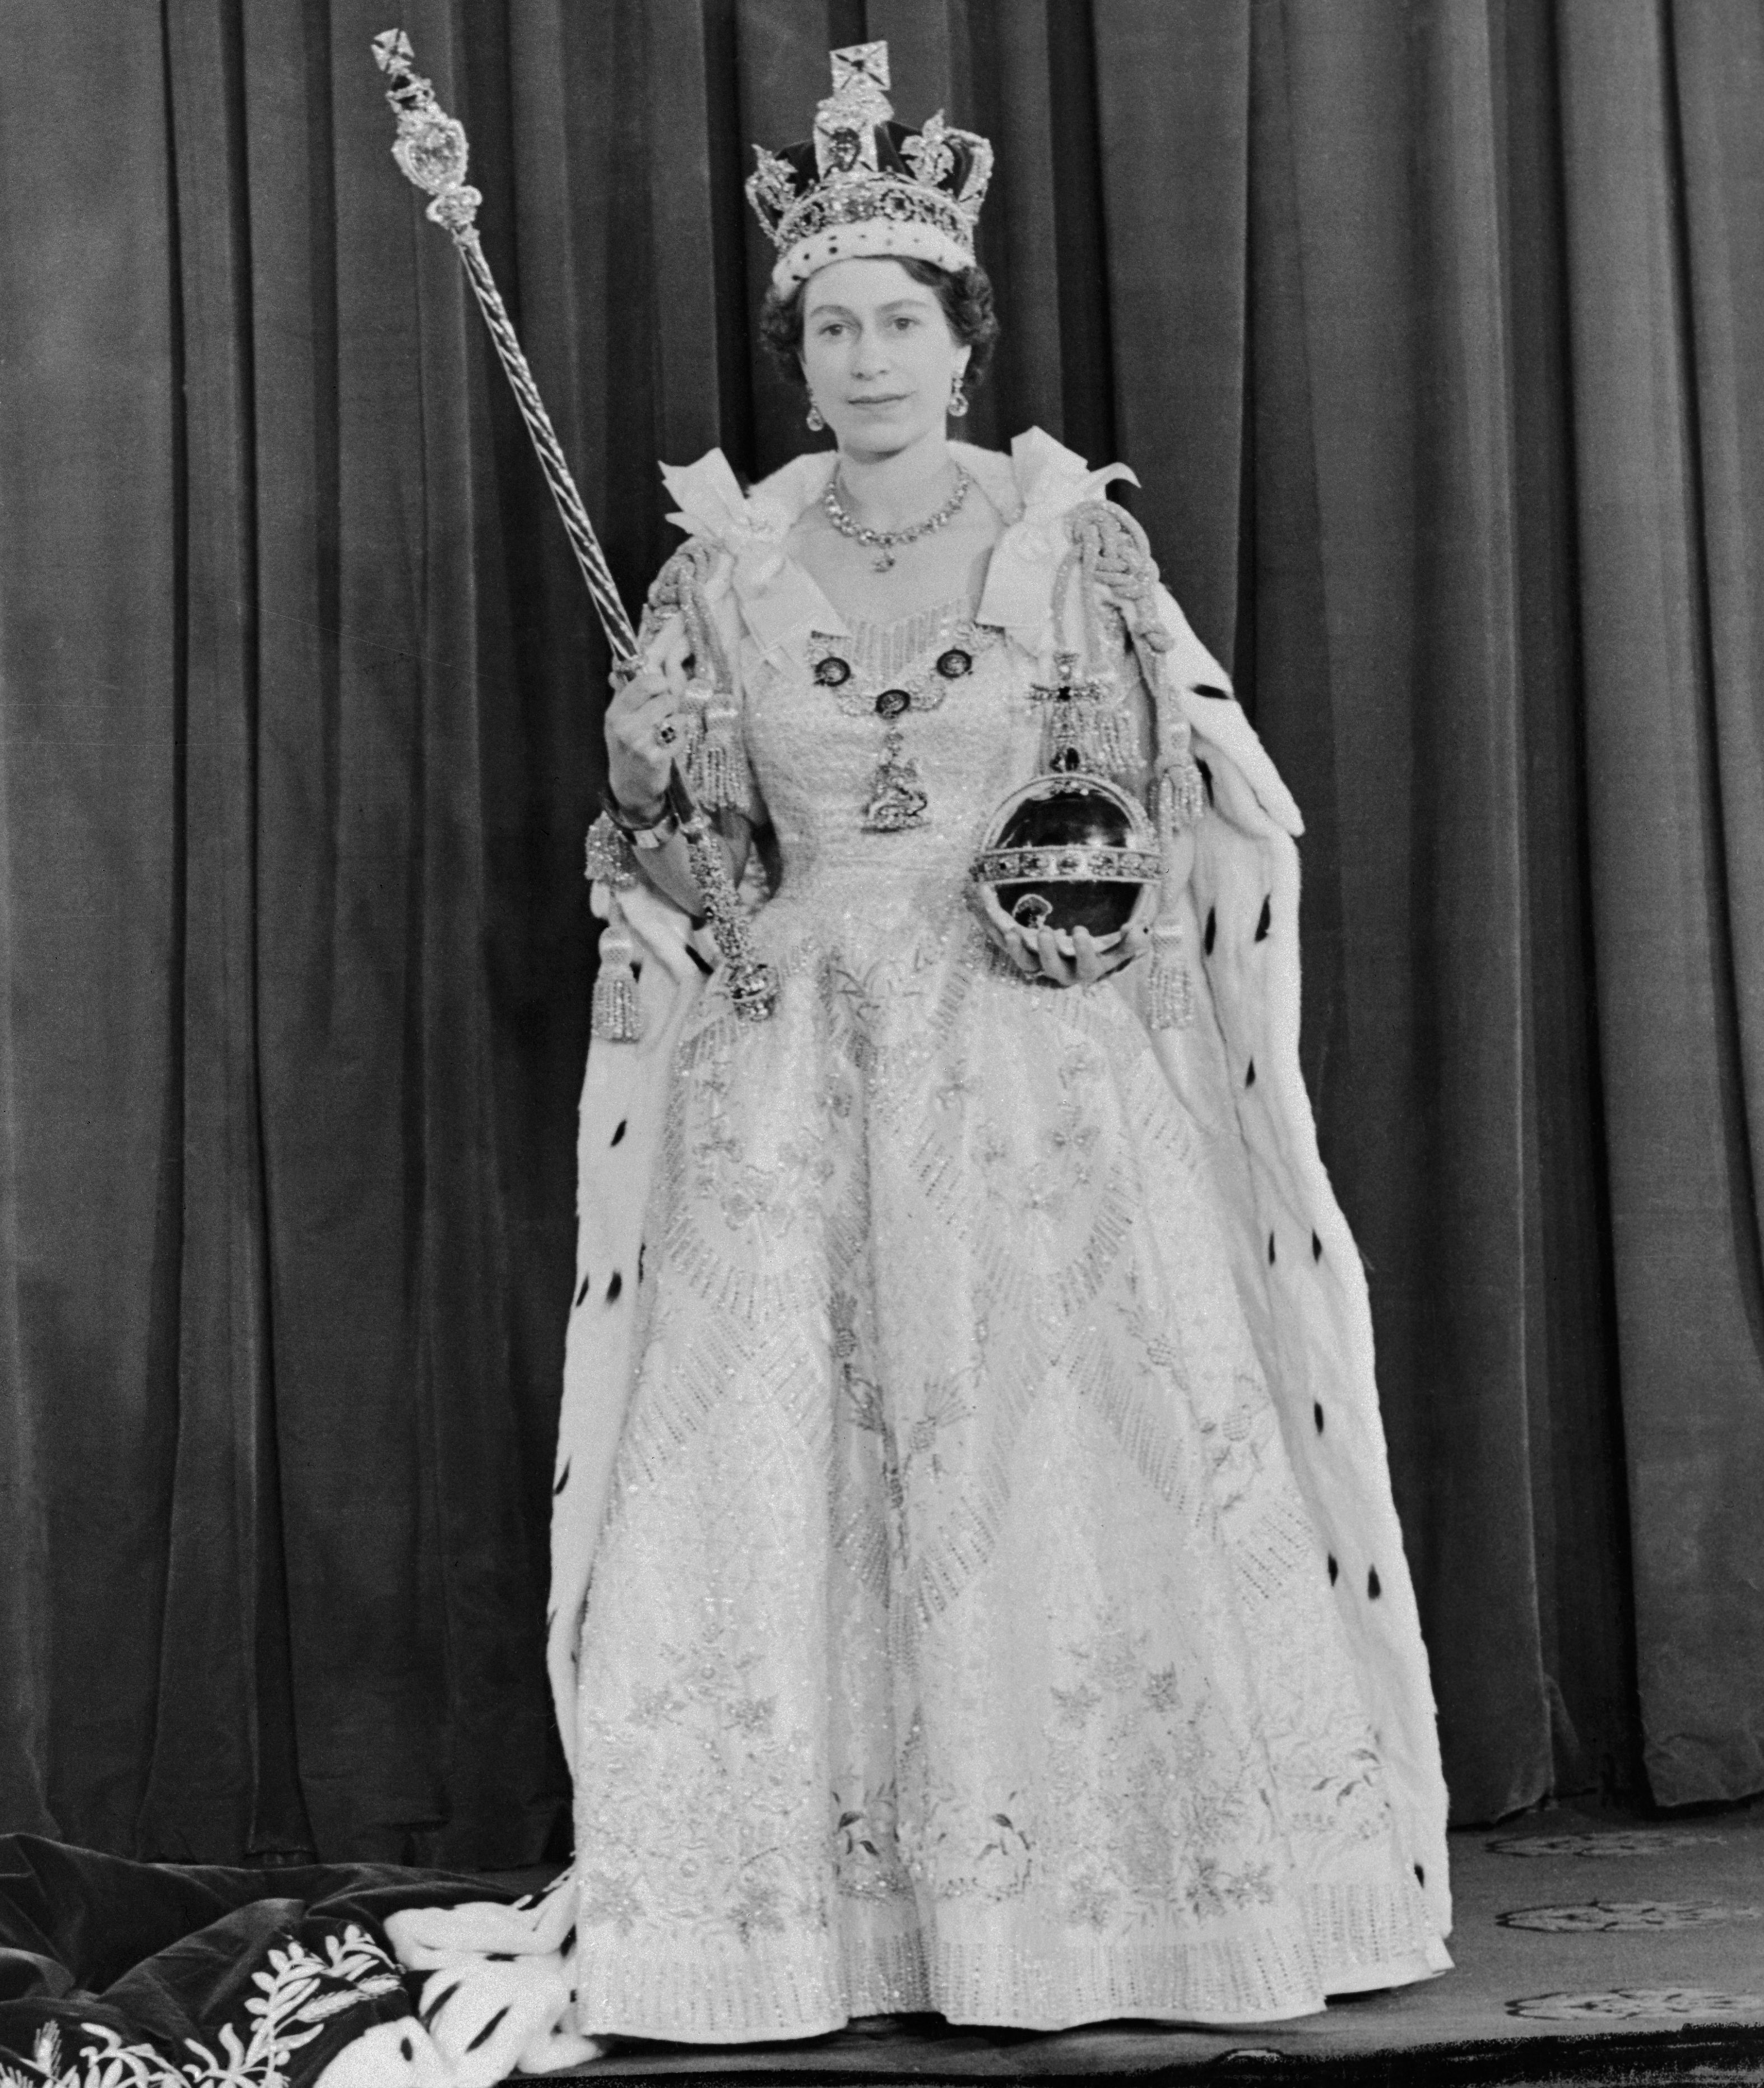 エリザベス女王の在位70周年を祝うプラチナジュビリーの詳細が発表 